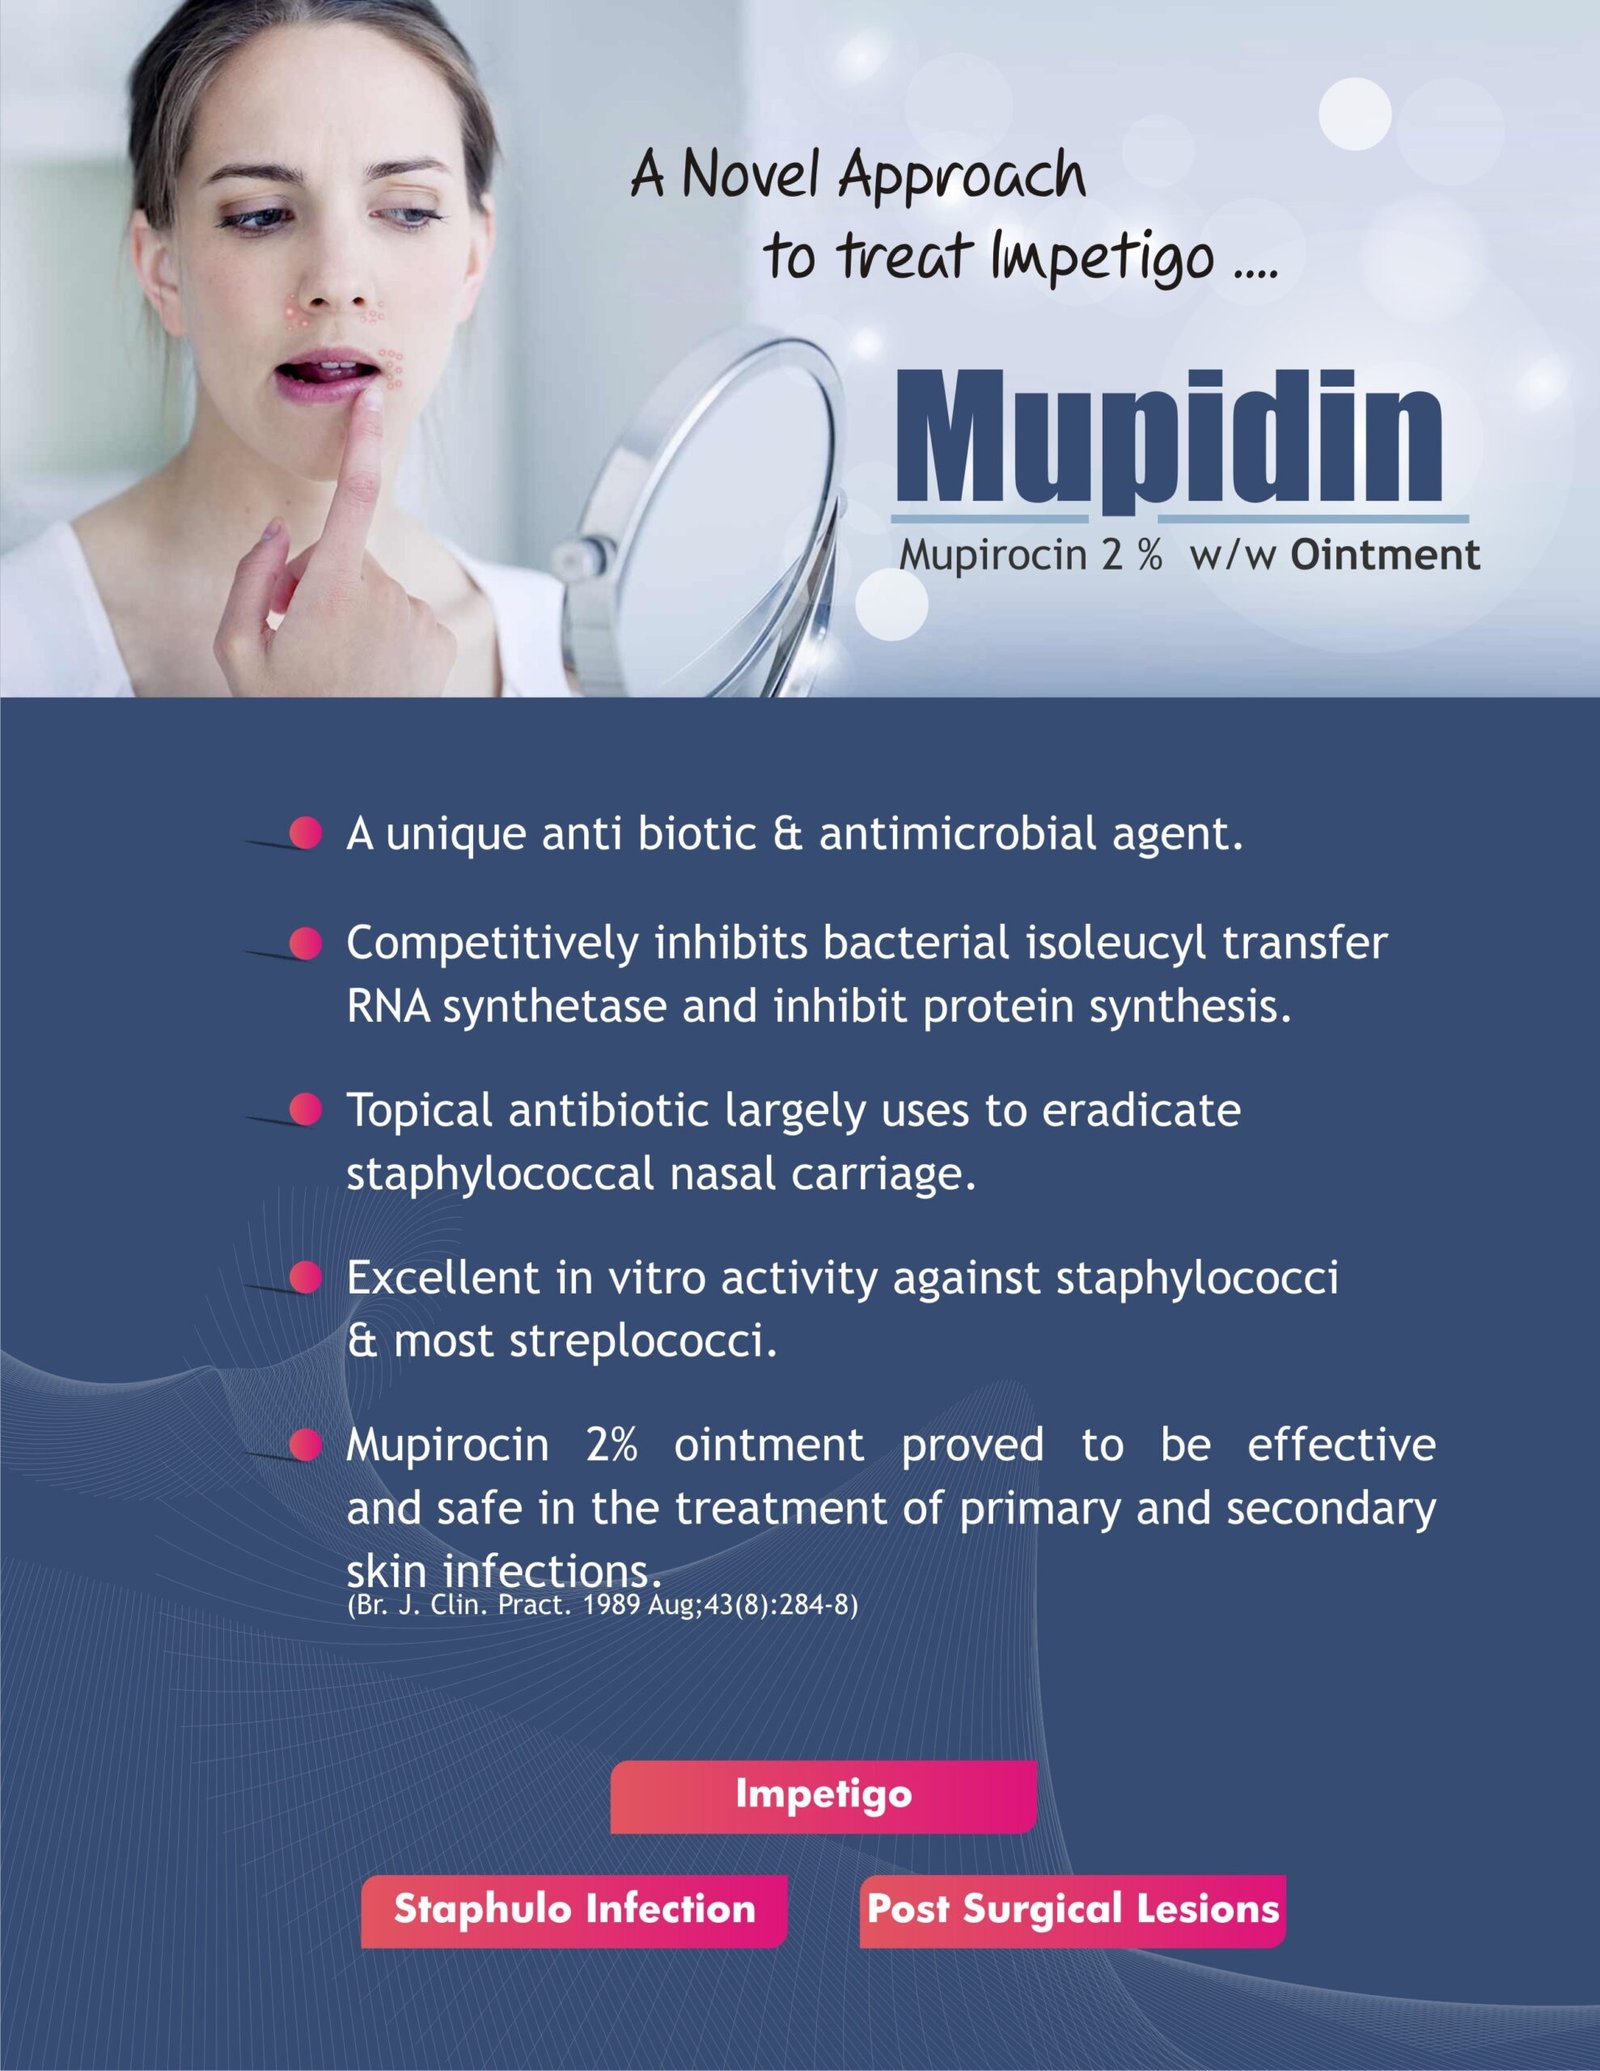 mupidin, dakshpharma, daksh pharmaceuticals panchkula, pcd